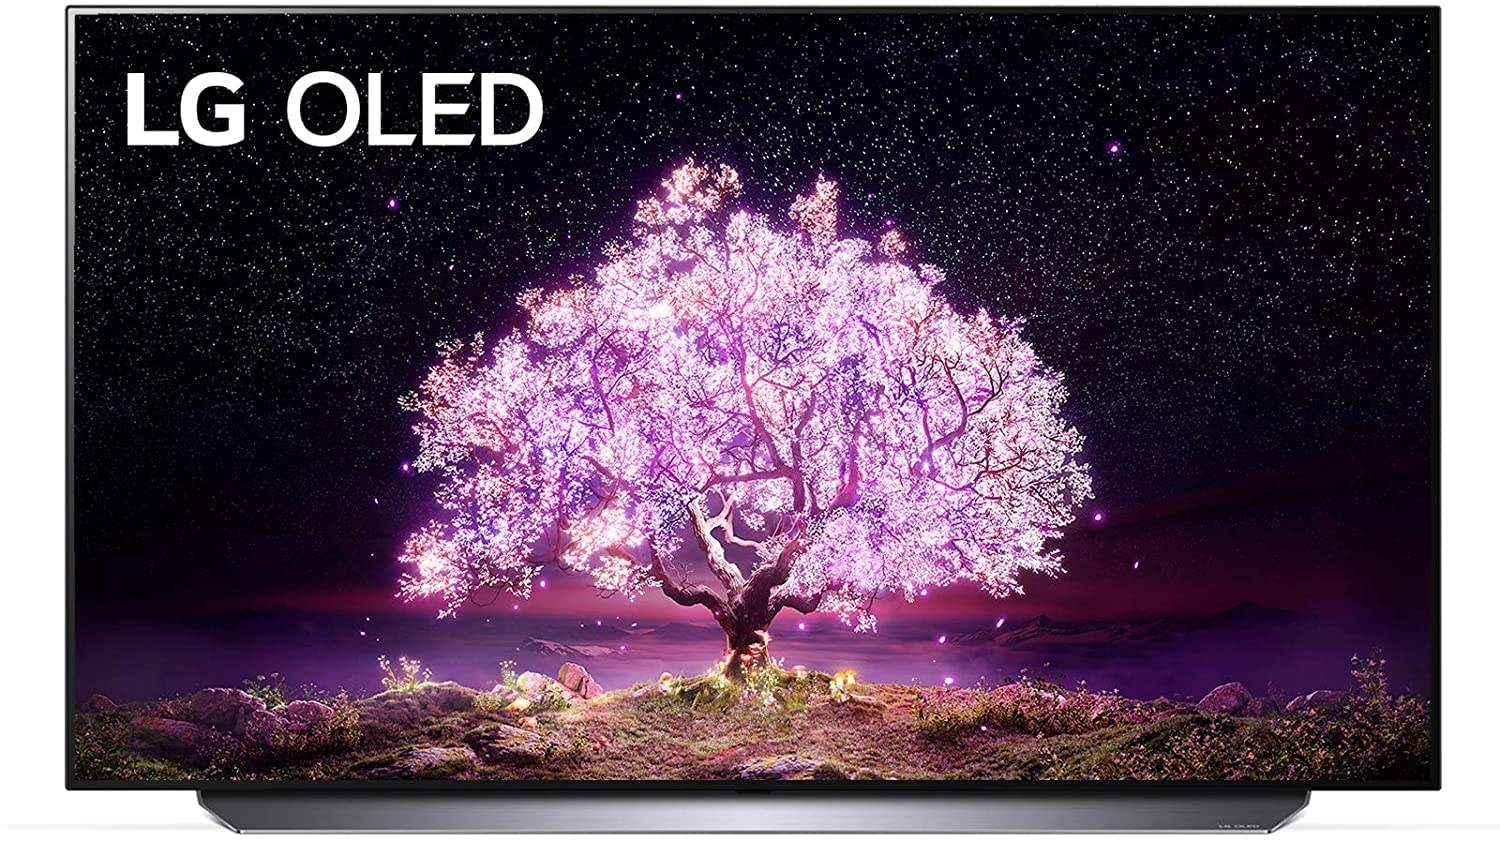 LG OLED 55" Smart TV